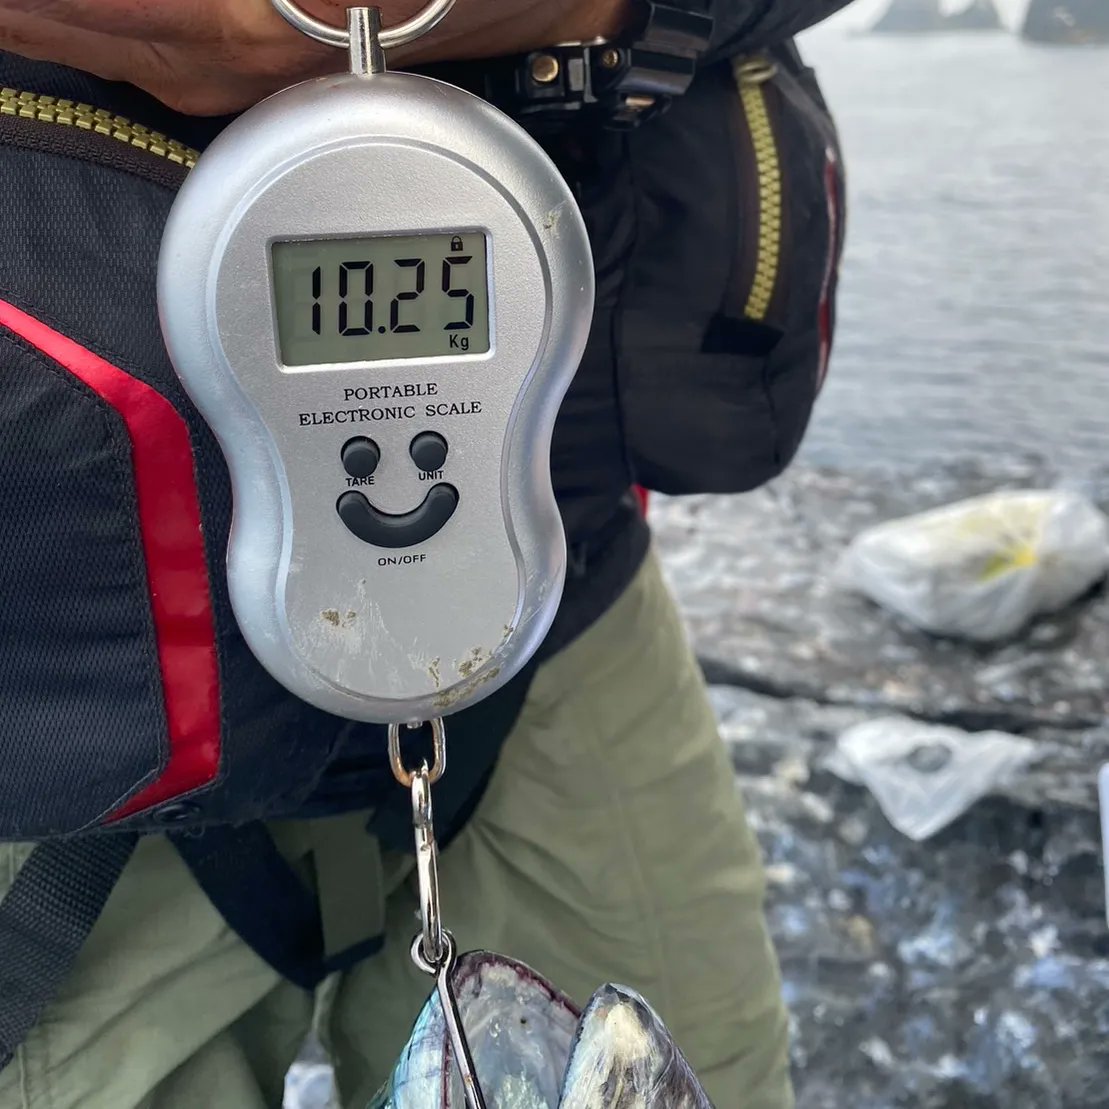 6月24日男女群島帆立岩にて釣友が90cmオーバー、10.25kgの化け物スマガツオを釣り上げました！
ネットで調べた限り過去最大は10.05kg。
という事は日本新記録？？